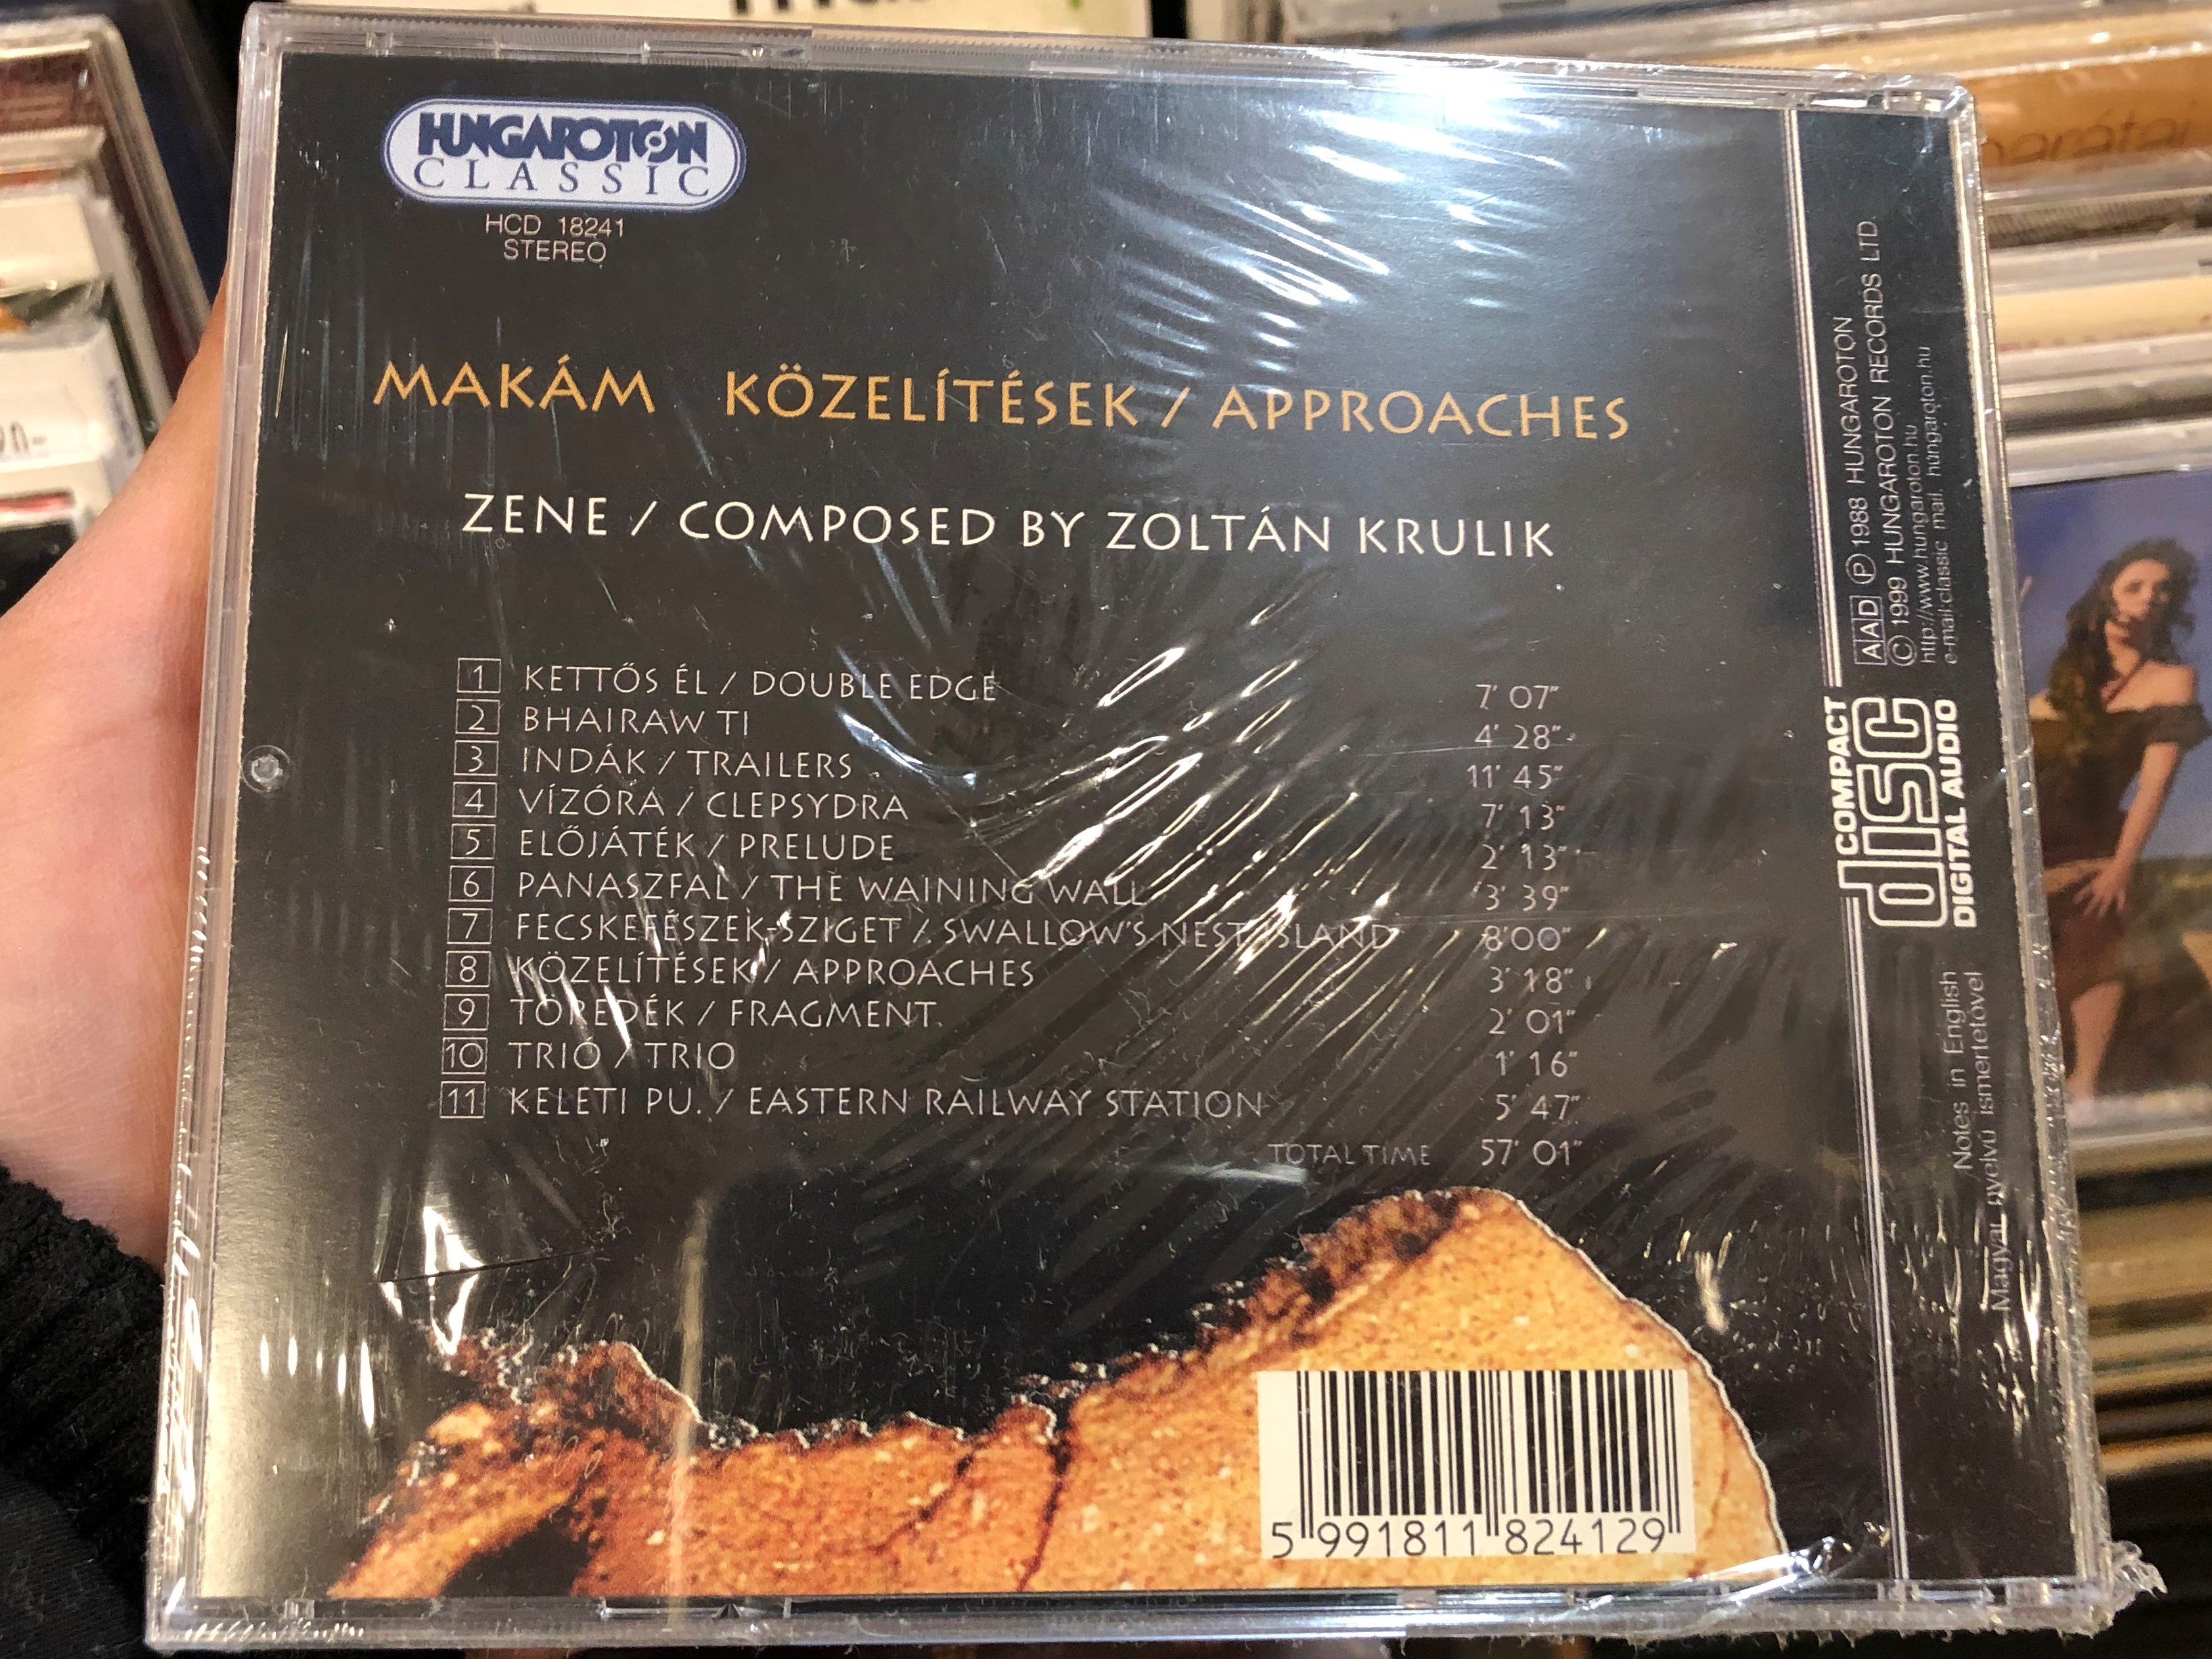 mak-m-k-zel-t-sek-approaches-composed-by-zolt-n-krulik-hungaroton-classic-audio-cd-1999-stereo-hcd-18241-2-.jpg